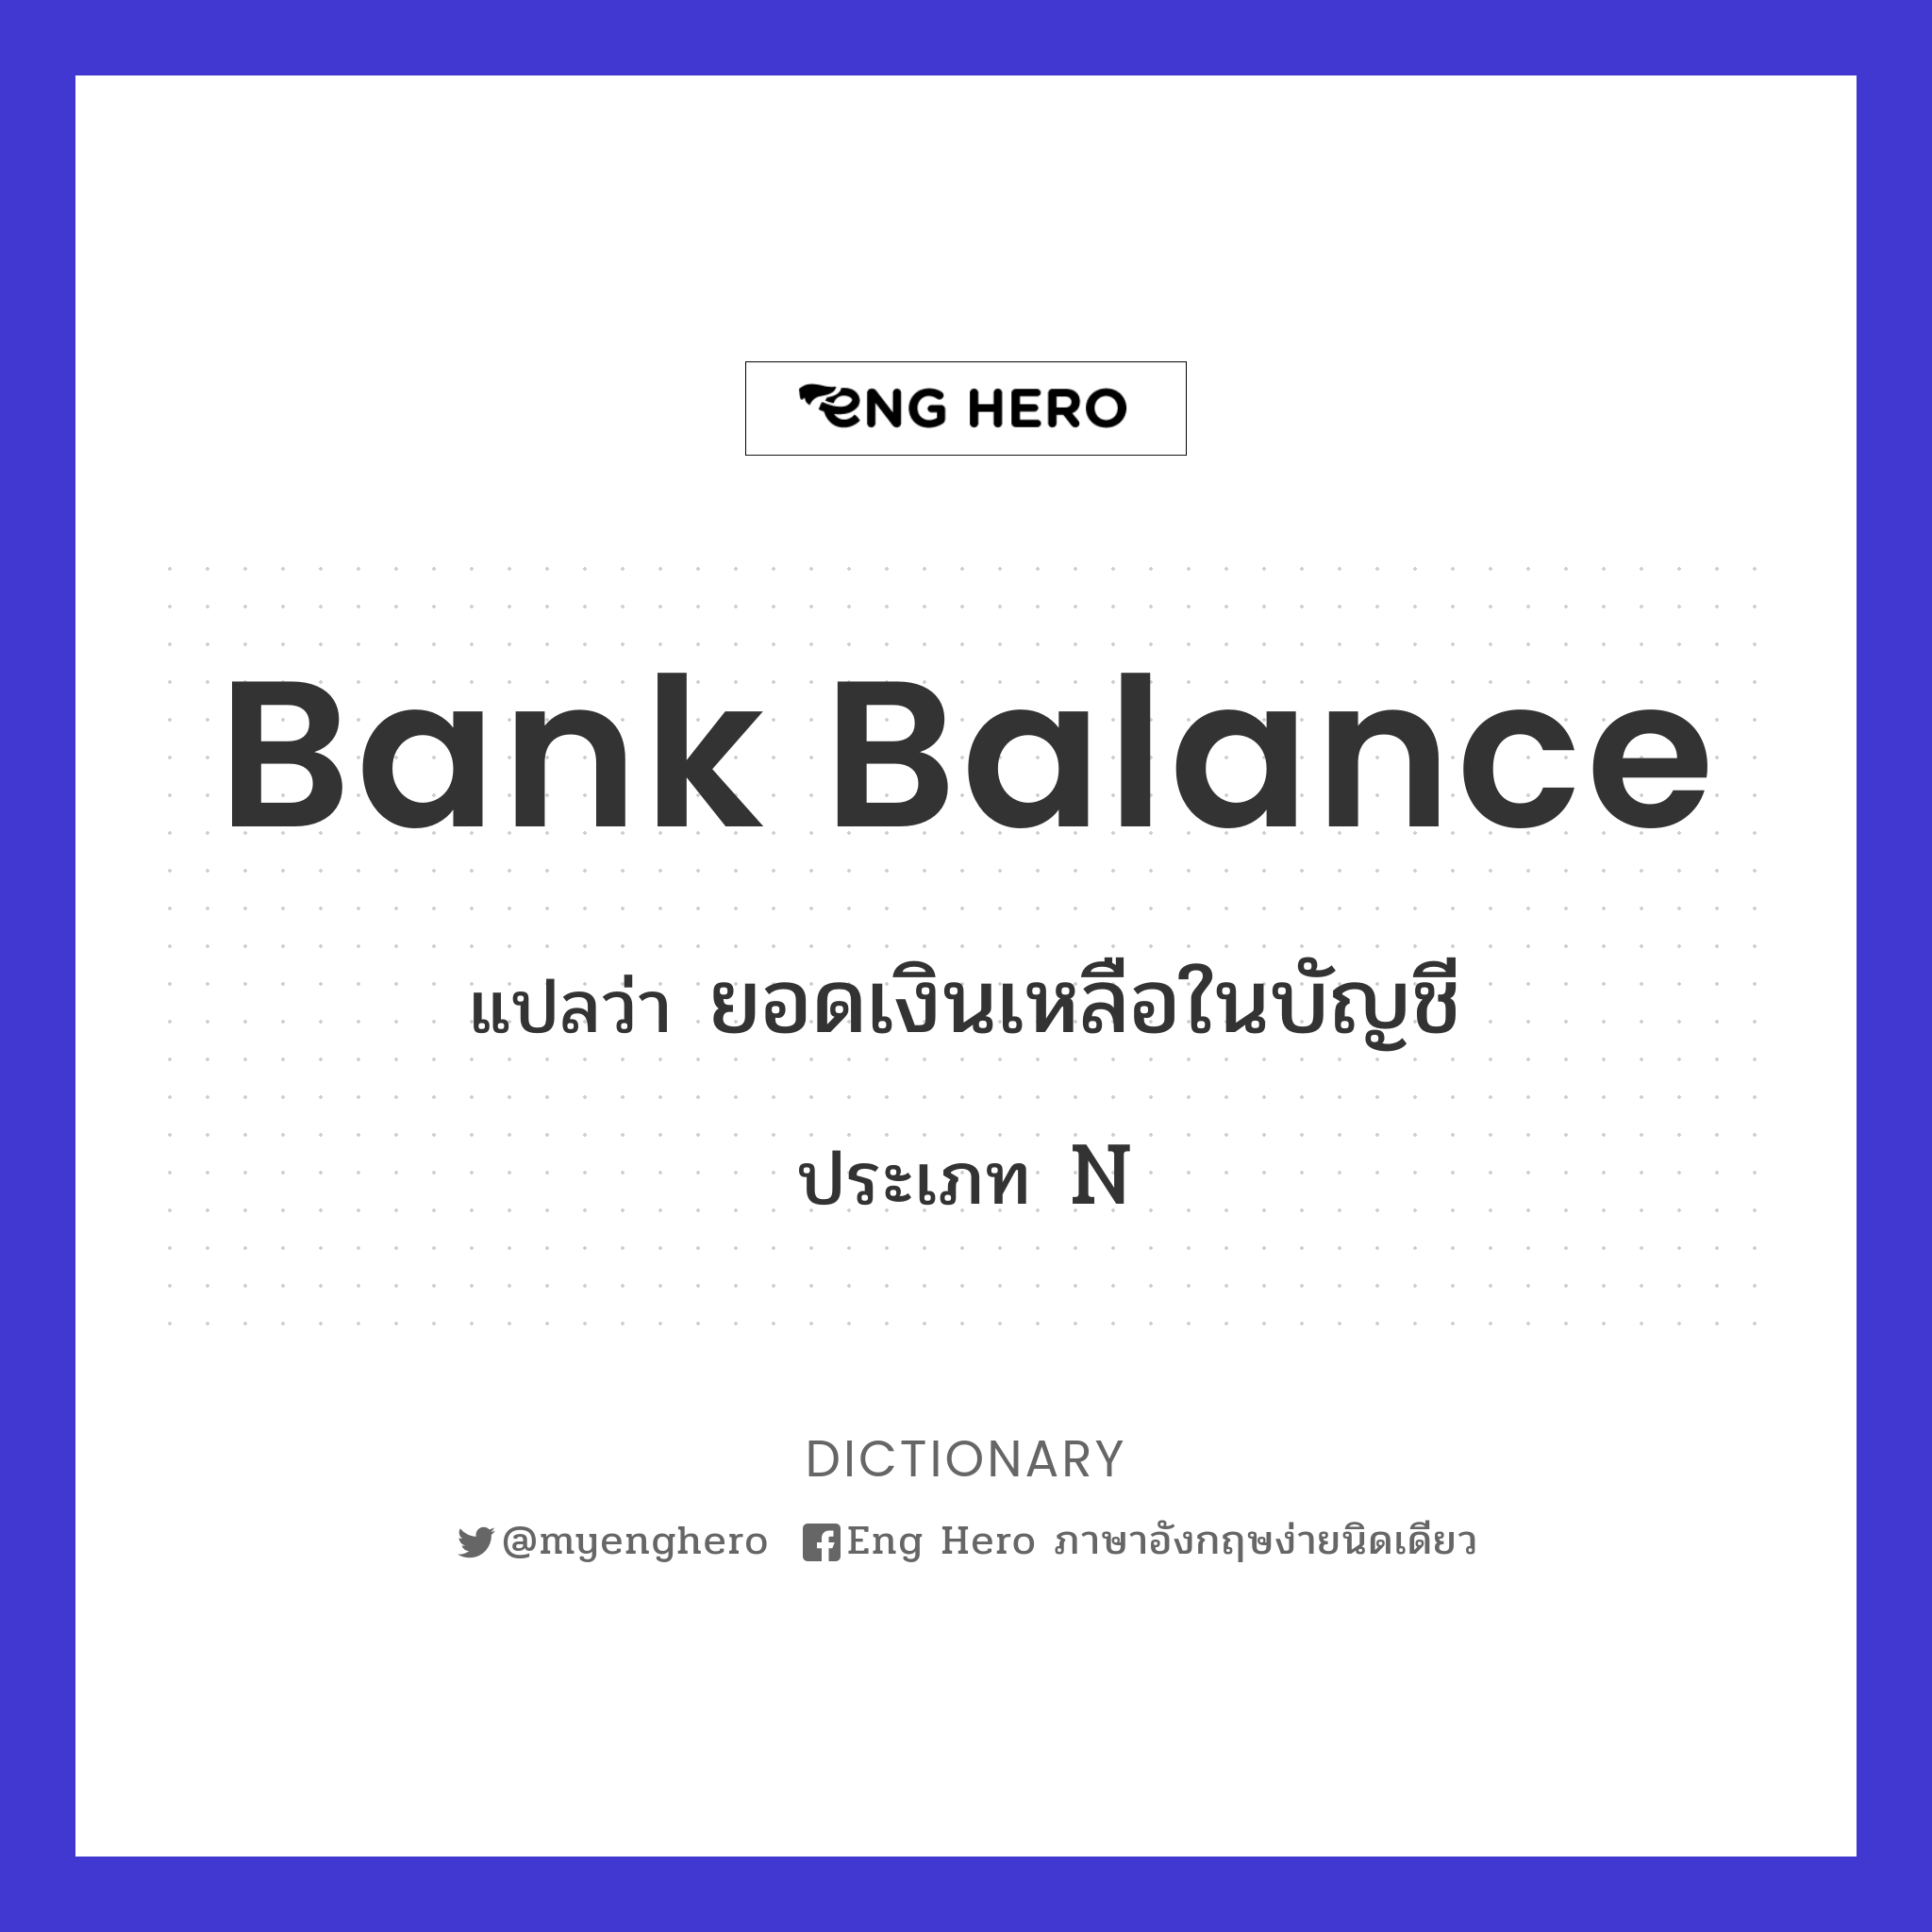 Bank Balance แปลว่า ยอดเงินเหลือในบัญชี | Eng Hero เรียนภาษาอังกฤษ ออนไลน์  ฟรี